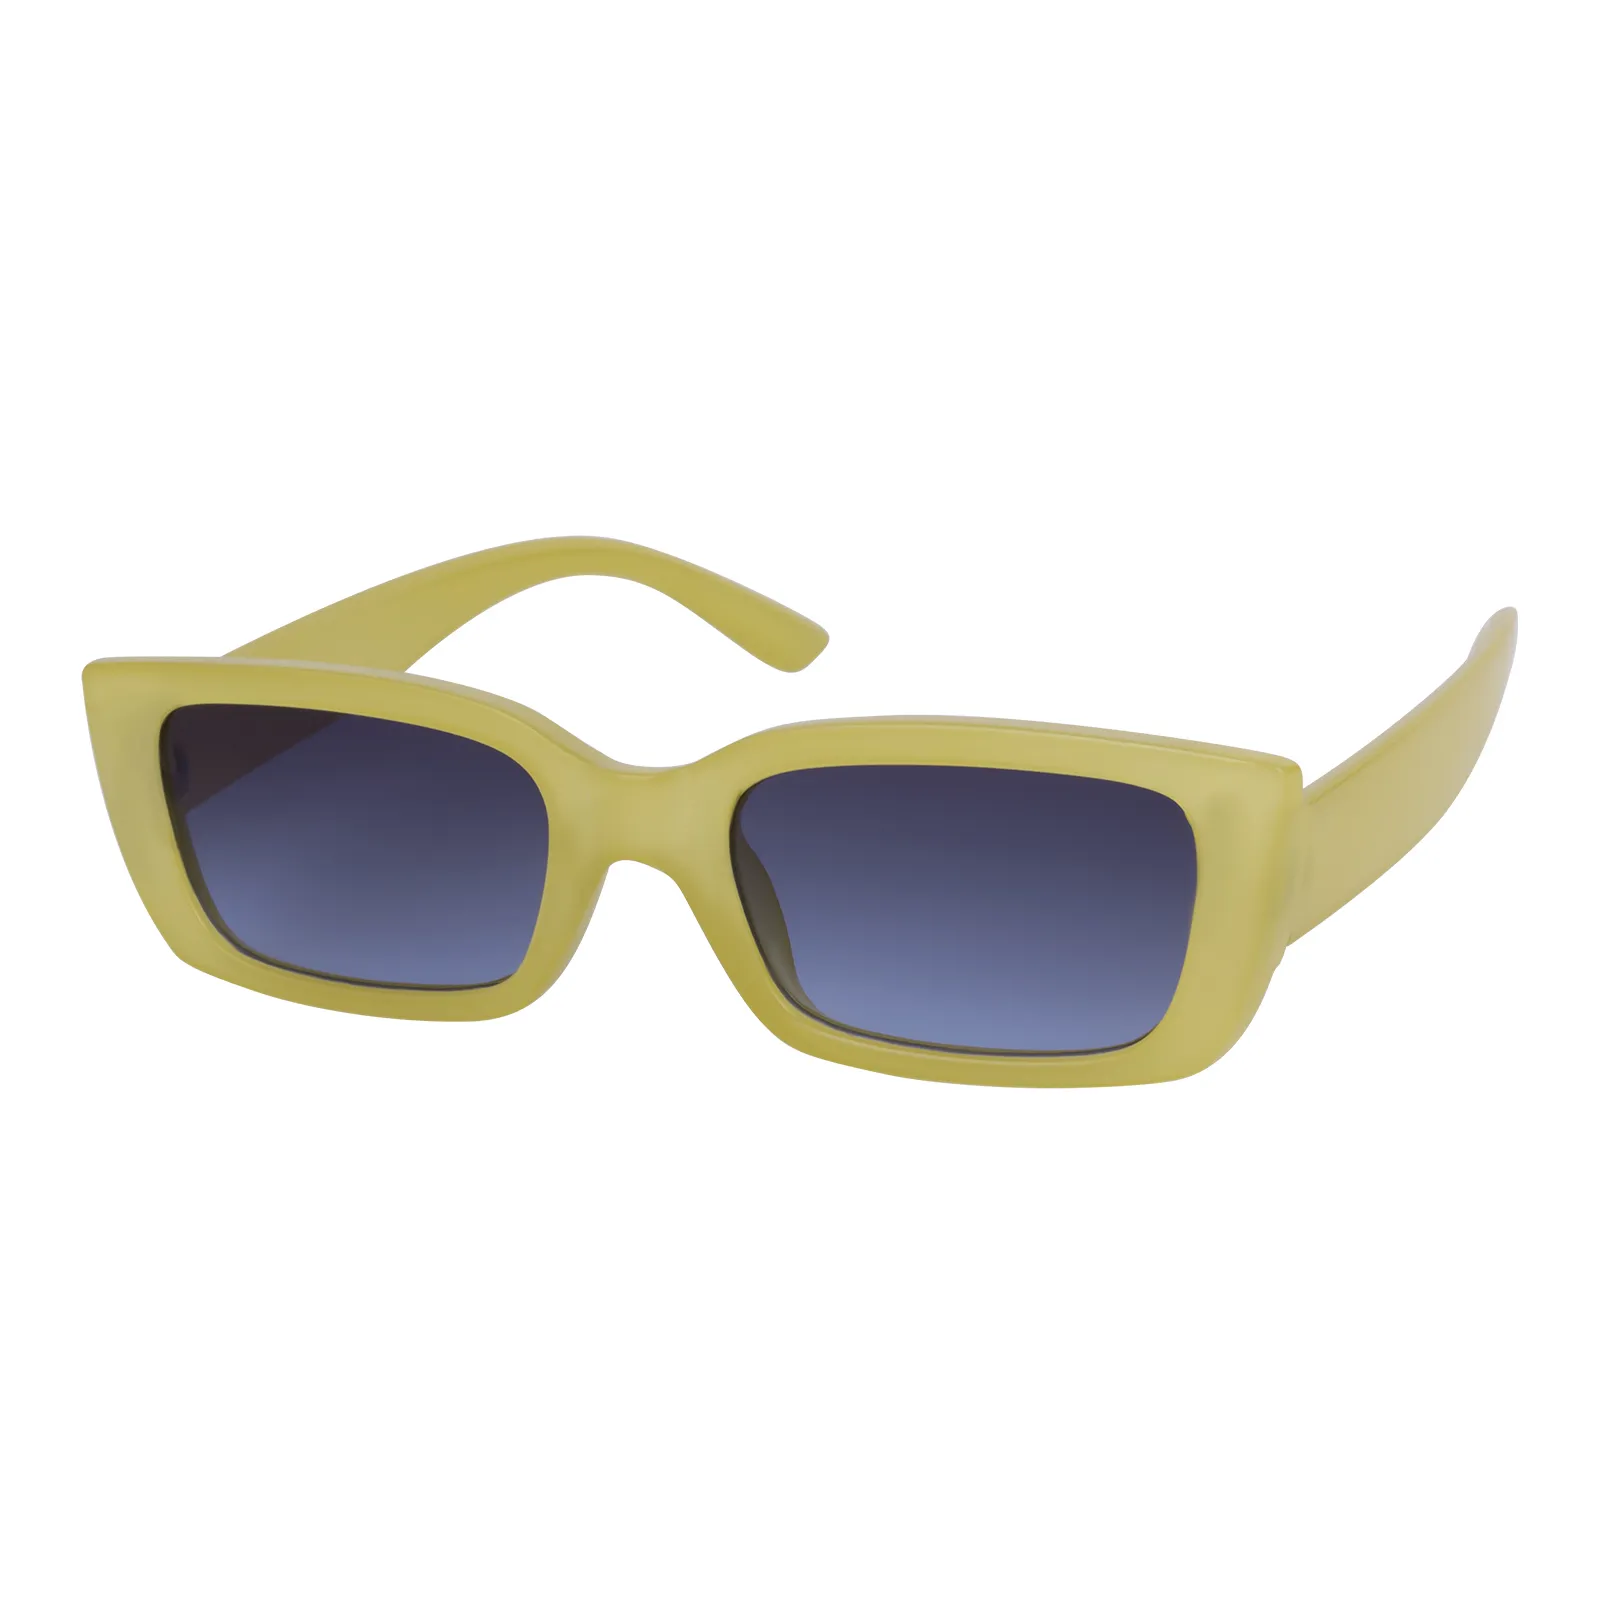 Suzanne - Square Bright Jelly Yellow Sunglasses for Women